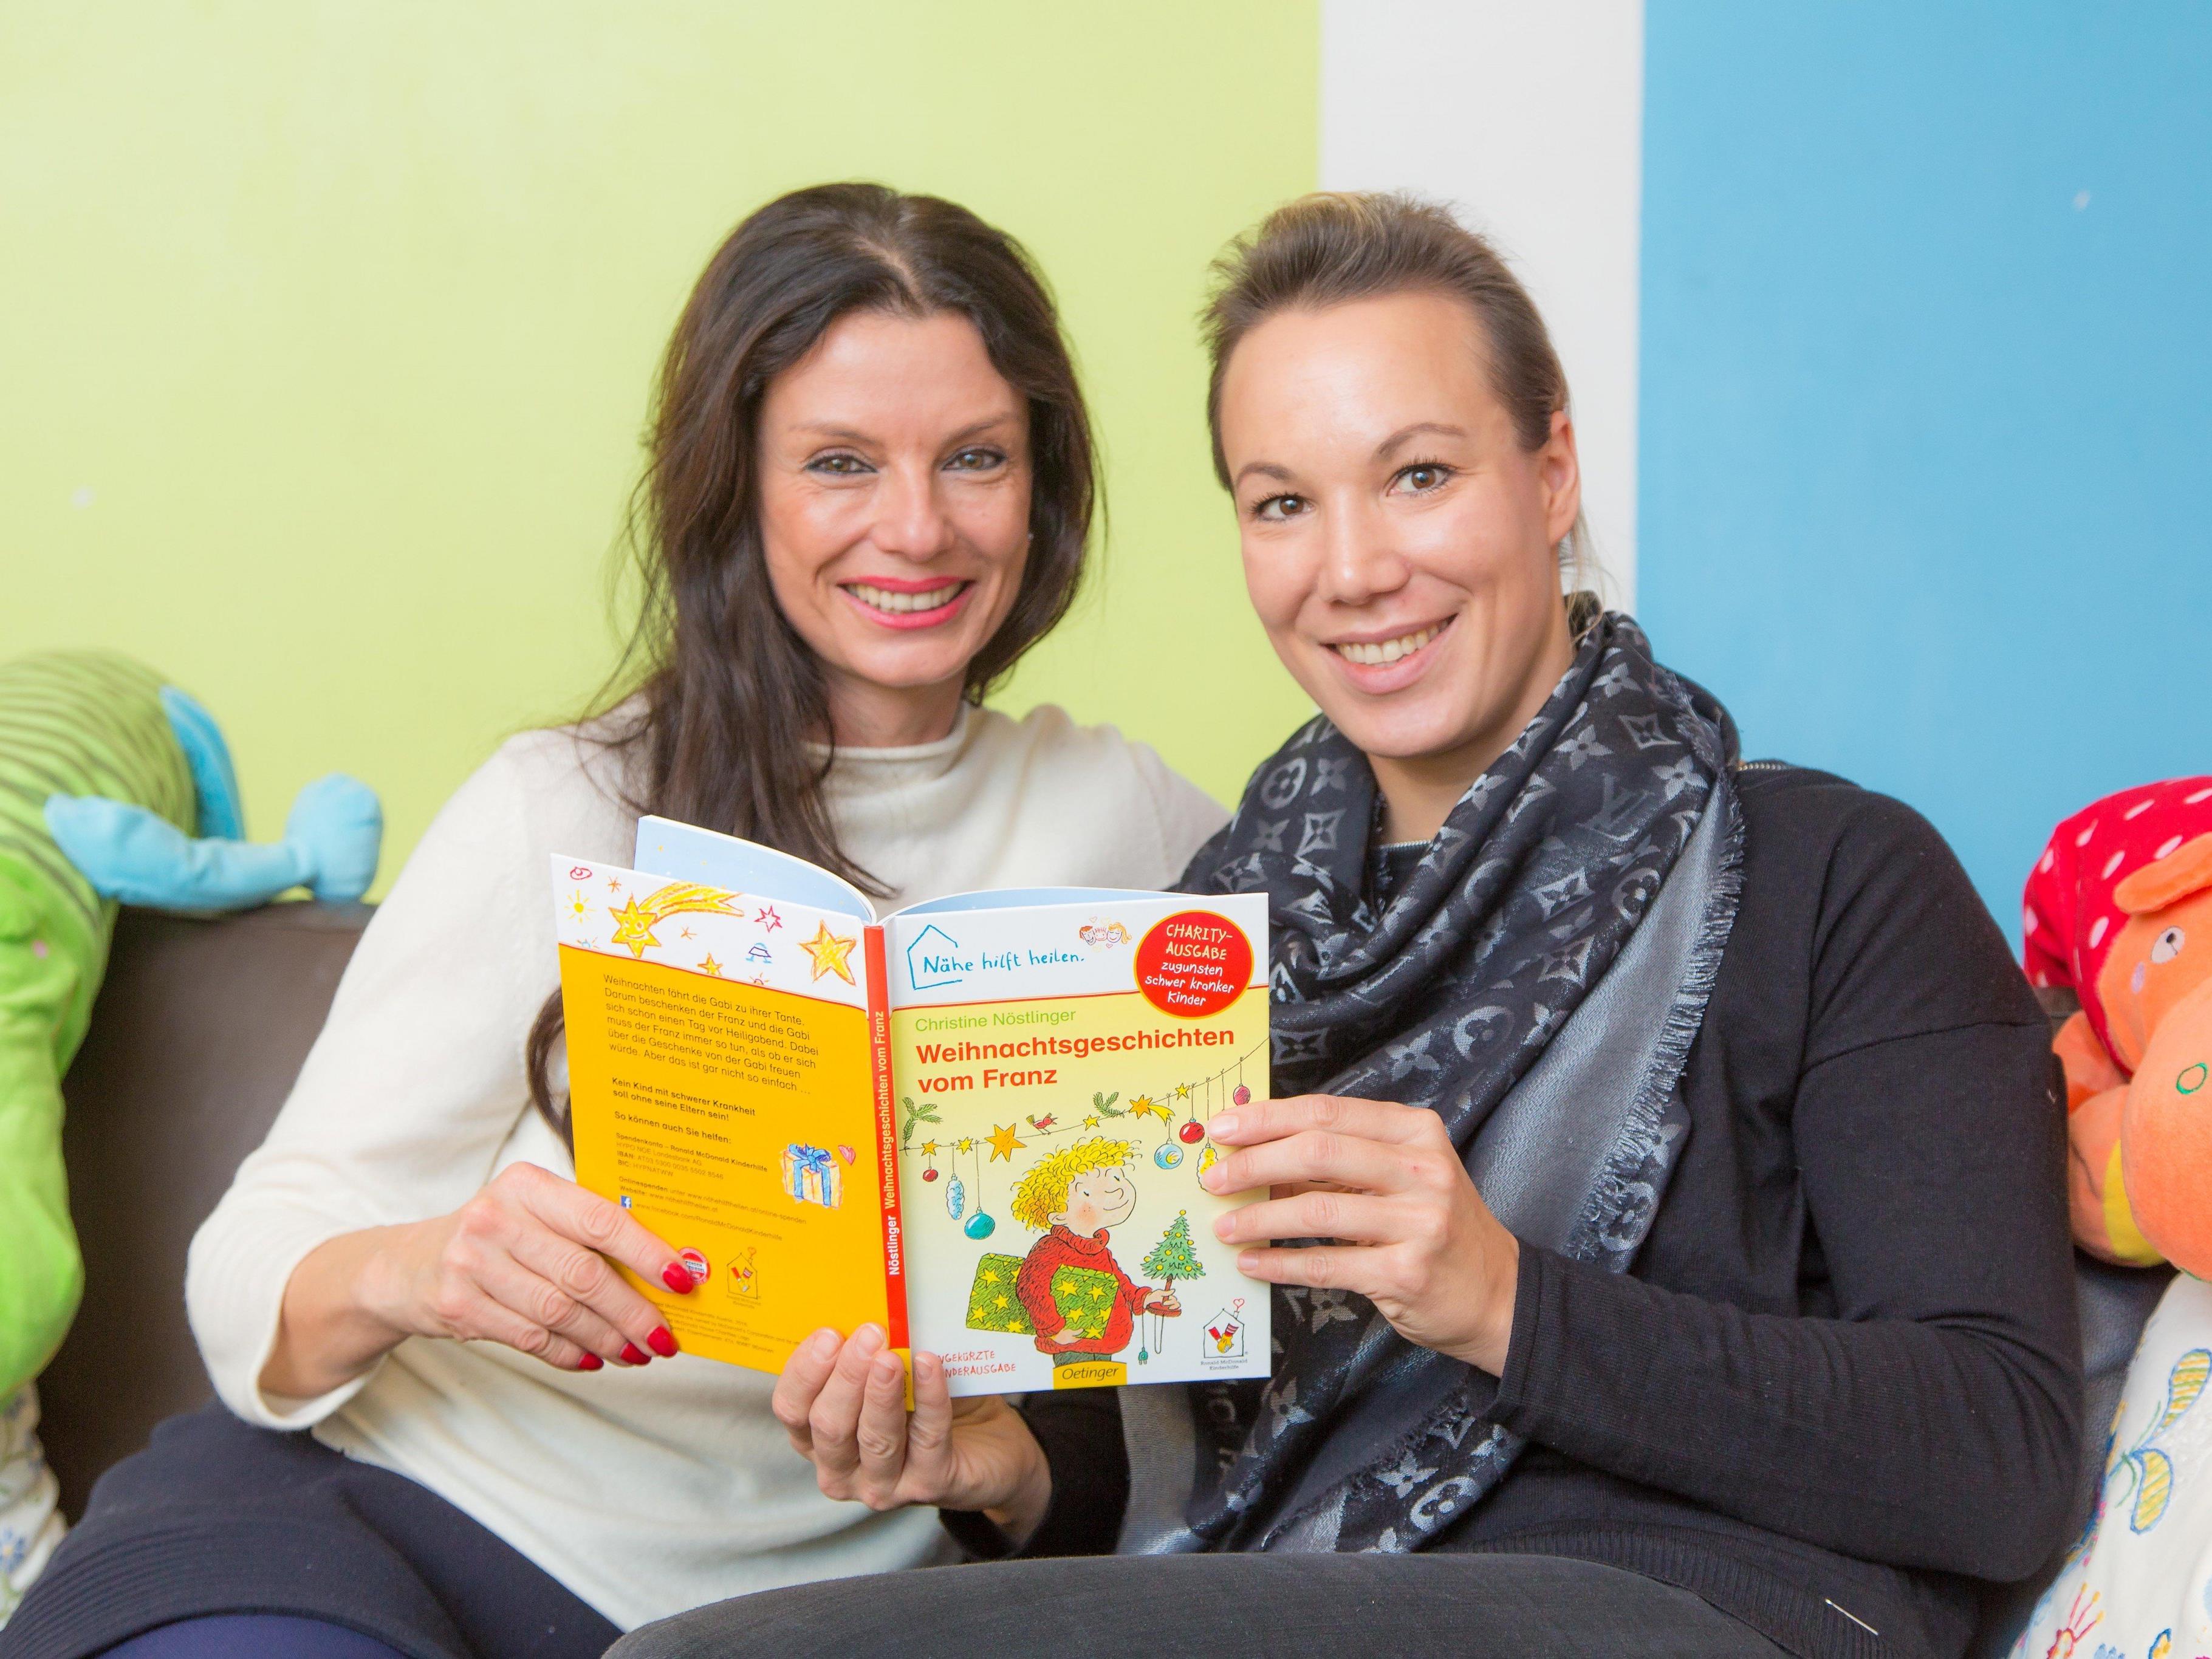 Sonja Klima, Präsidentin der Ronald McDonald Kinderhilfe, (l.) und Karin Dopplinger, eine ehrenamtliche Mitarbeiterin im Kinderhilfe Haus in Wien